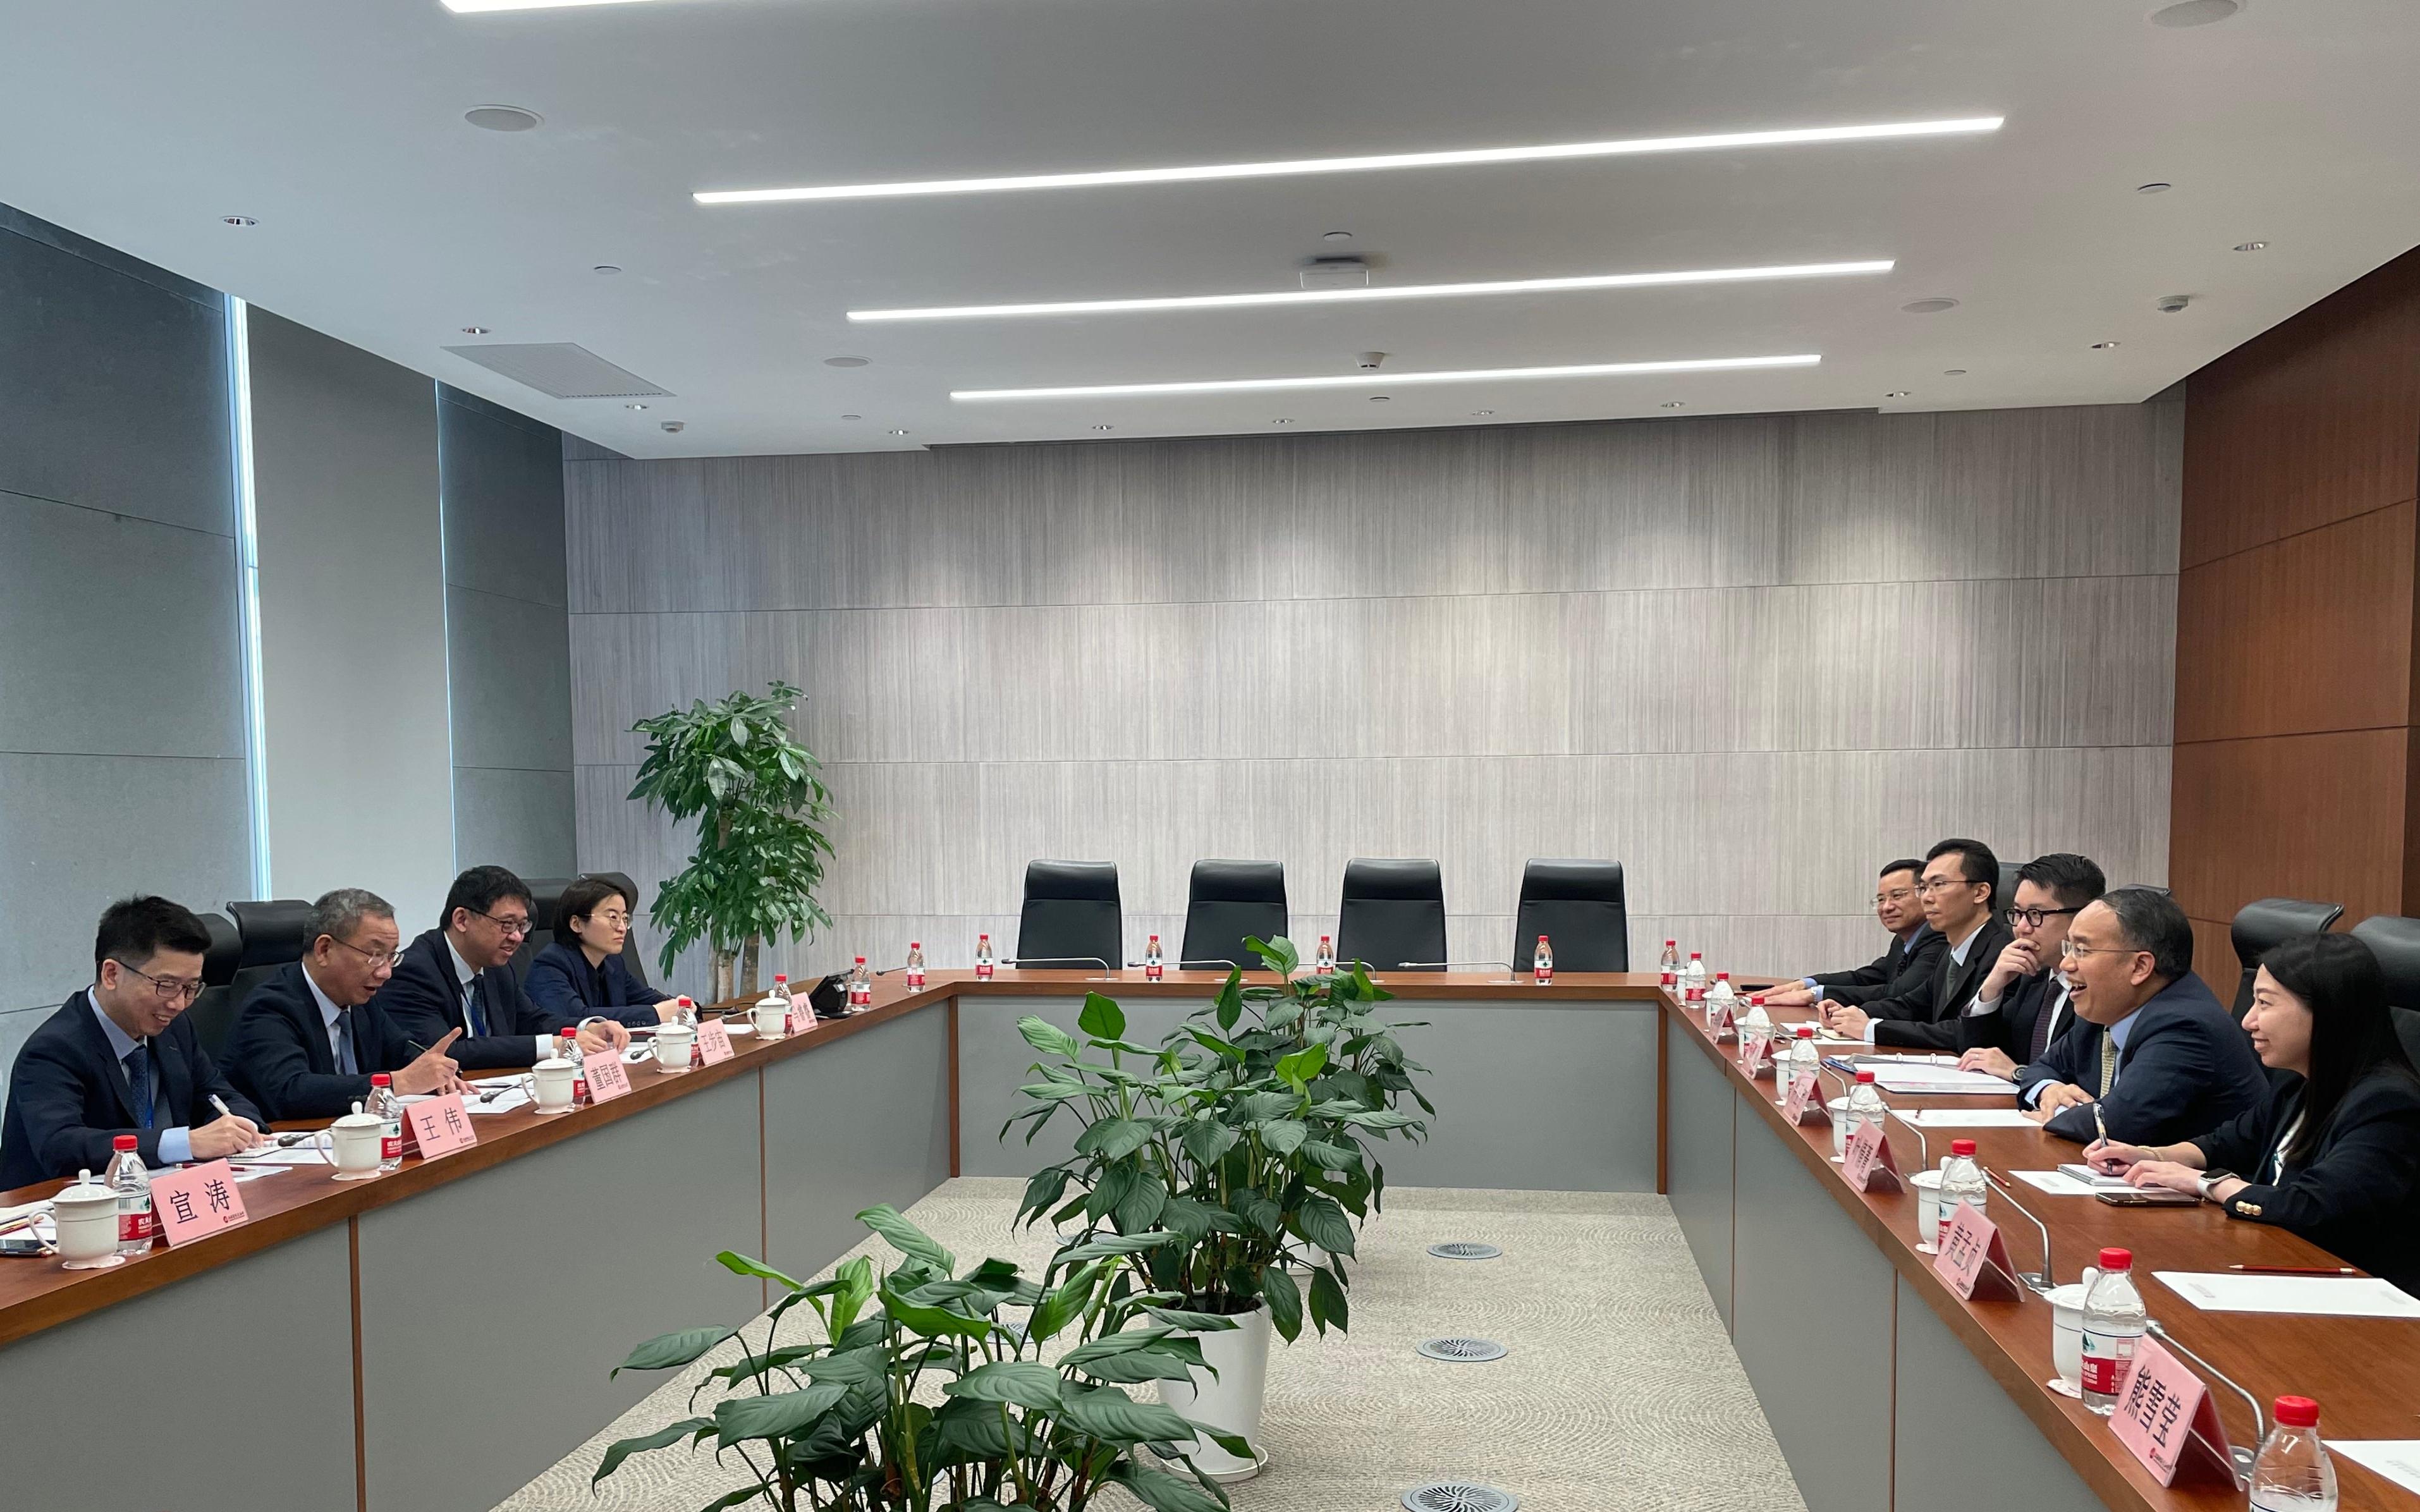 財經事務及庫務局局長許正宇在上海出席第十四屆陸家嘴論壇。圖示許正宇（右二）昨日（六月八日）與上海證券交易所副總經理董國群（左二）會面。





